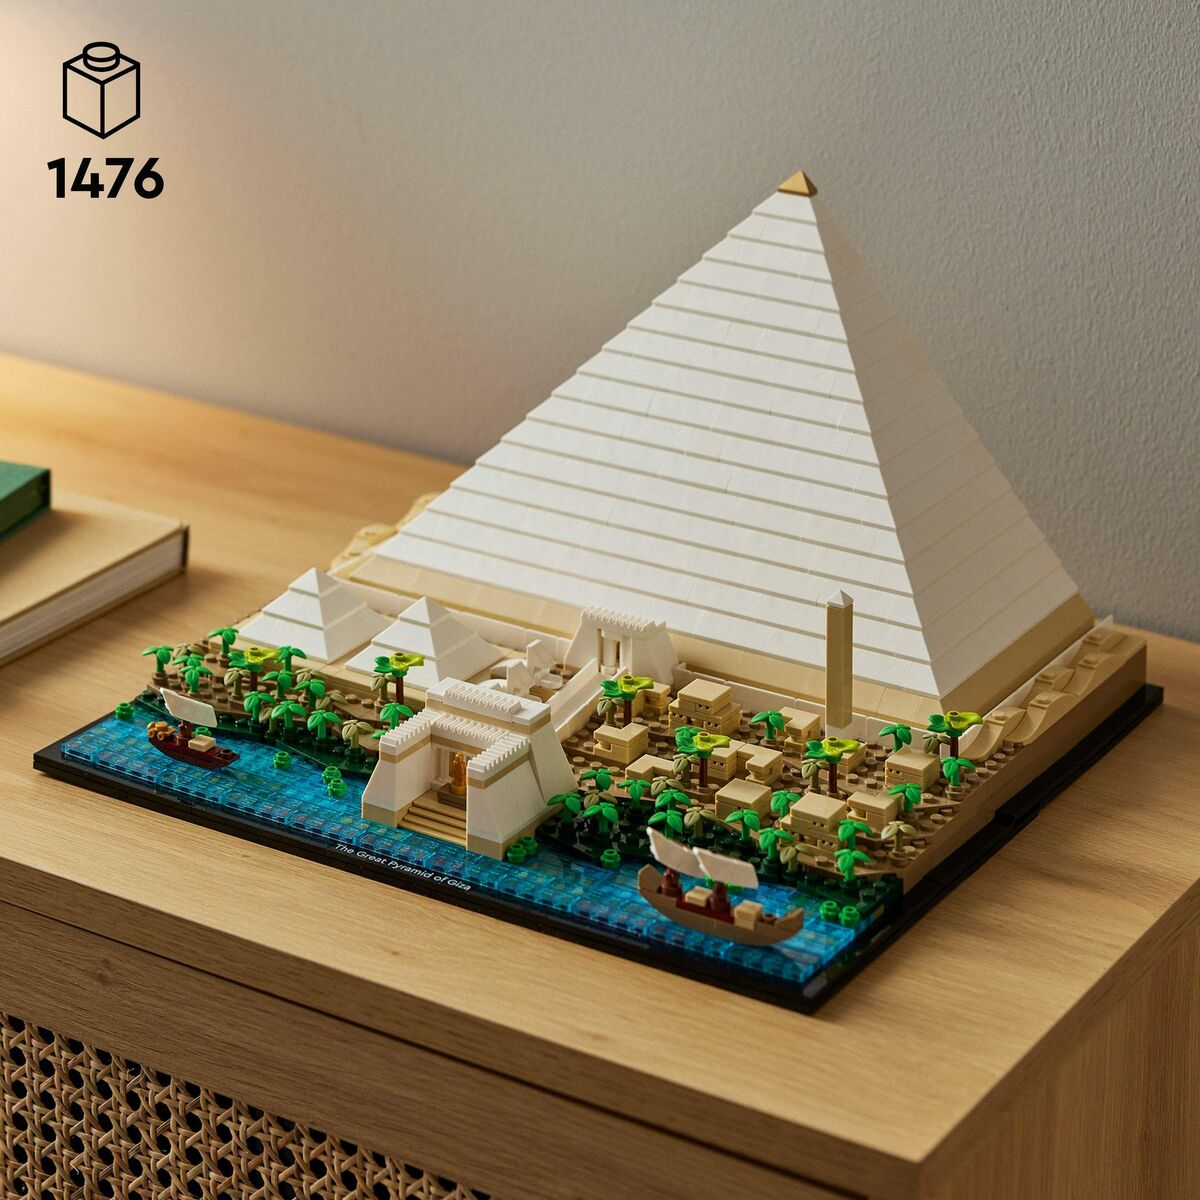 Playset Lego 21058 Architecture The Great Pyramid of Giza 1476 Pezzi - Disponibile in 3-4 giorni lavorativi